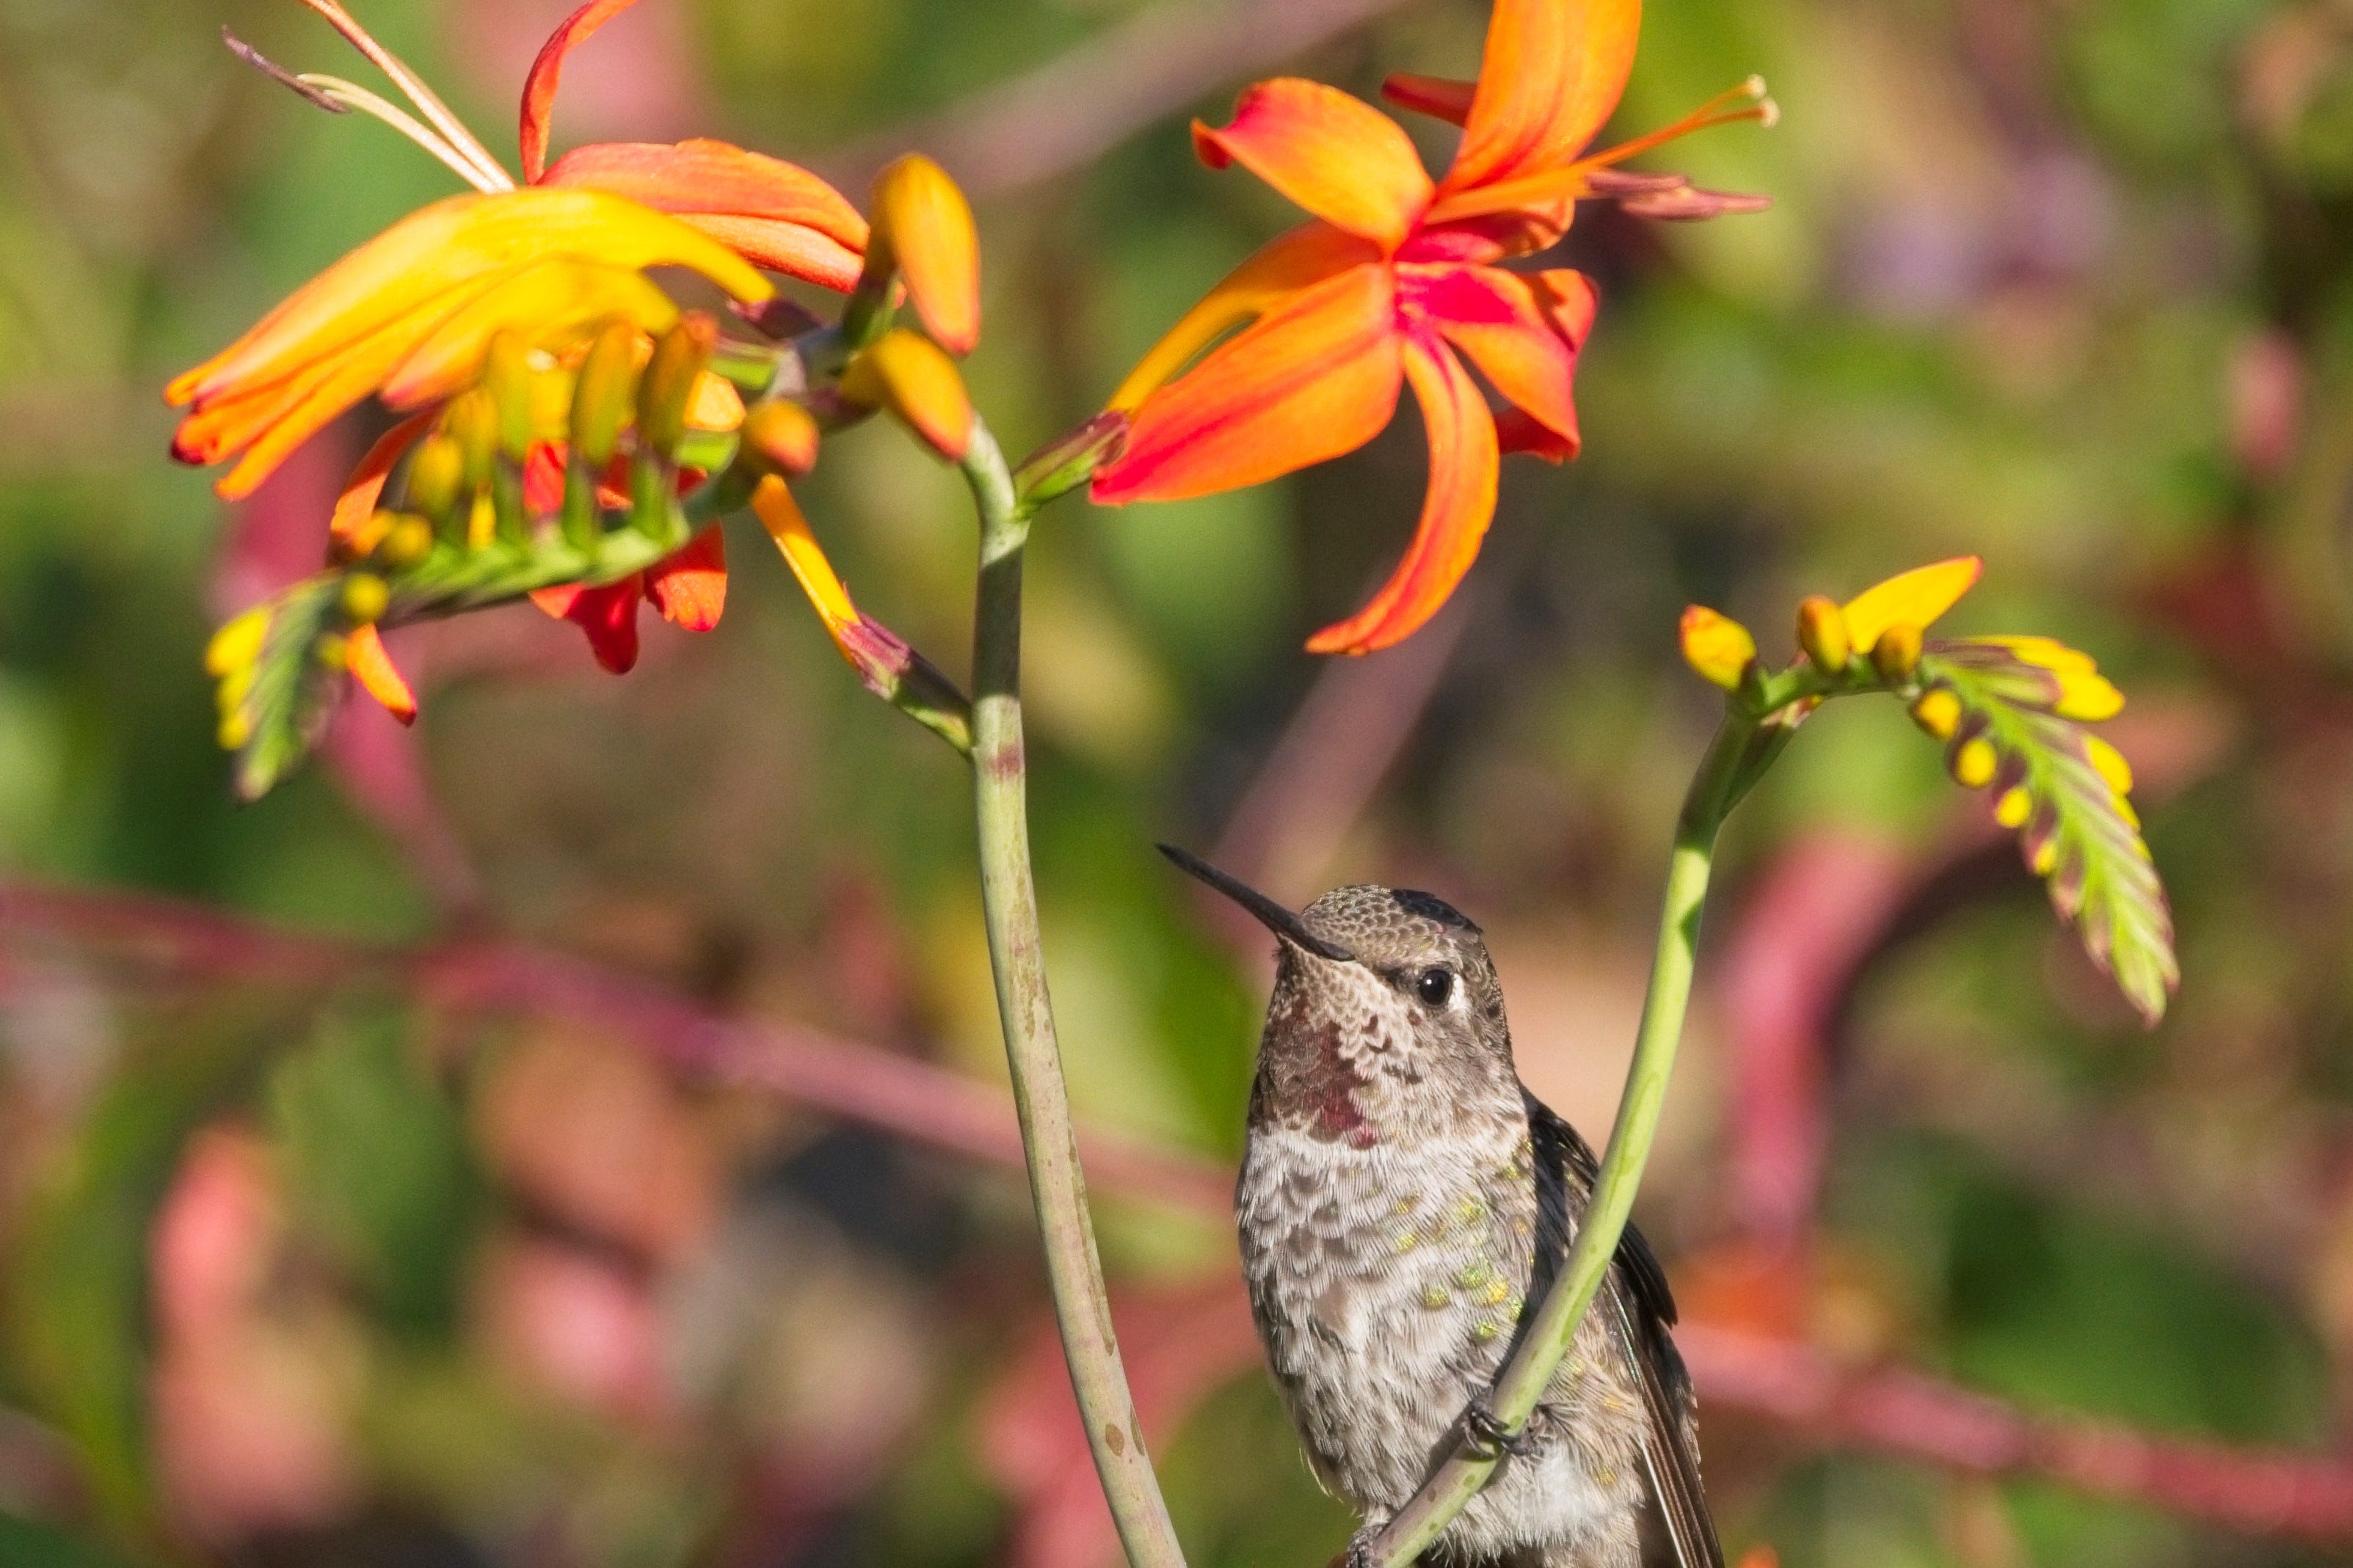 Crocosmia and Hummingbird. Photo by Tami S.